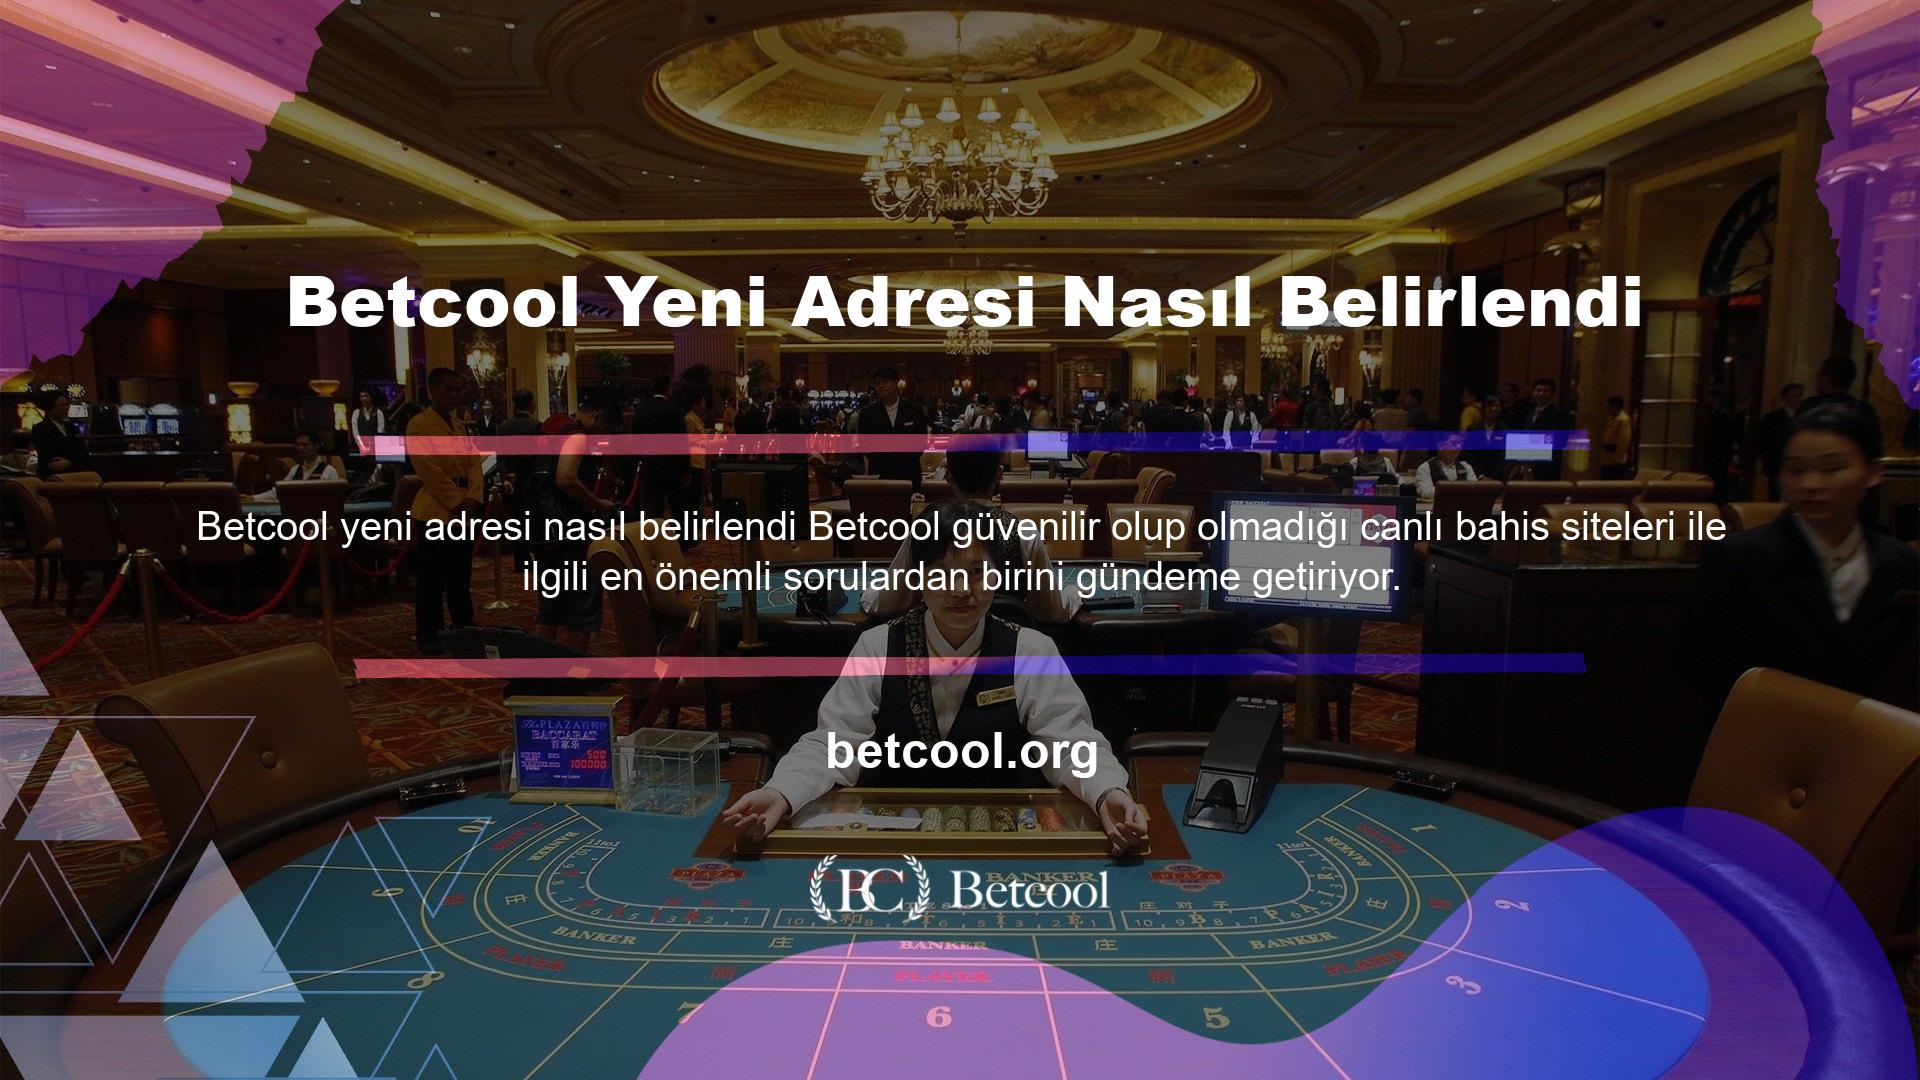 Betcool yeni adresi nasıl belirlendi